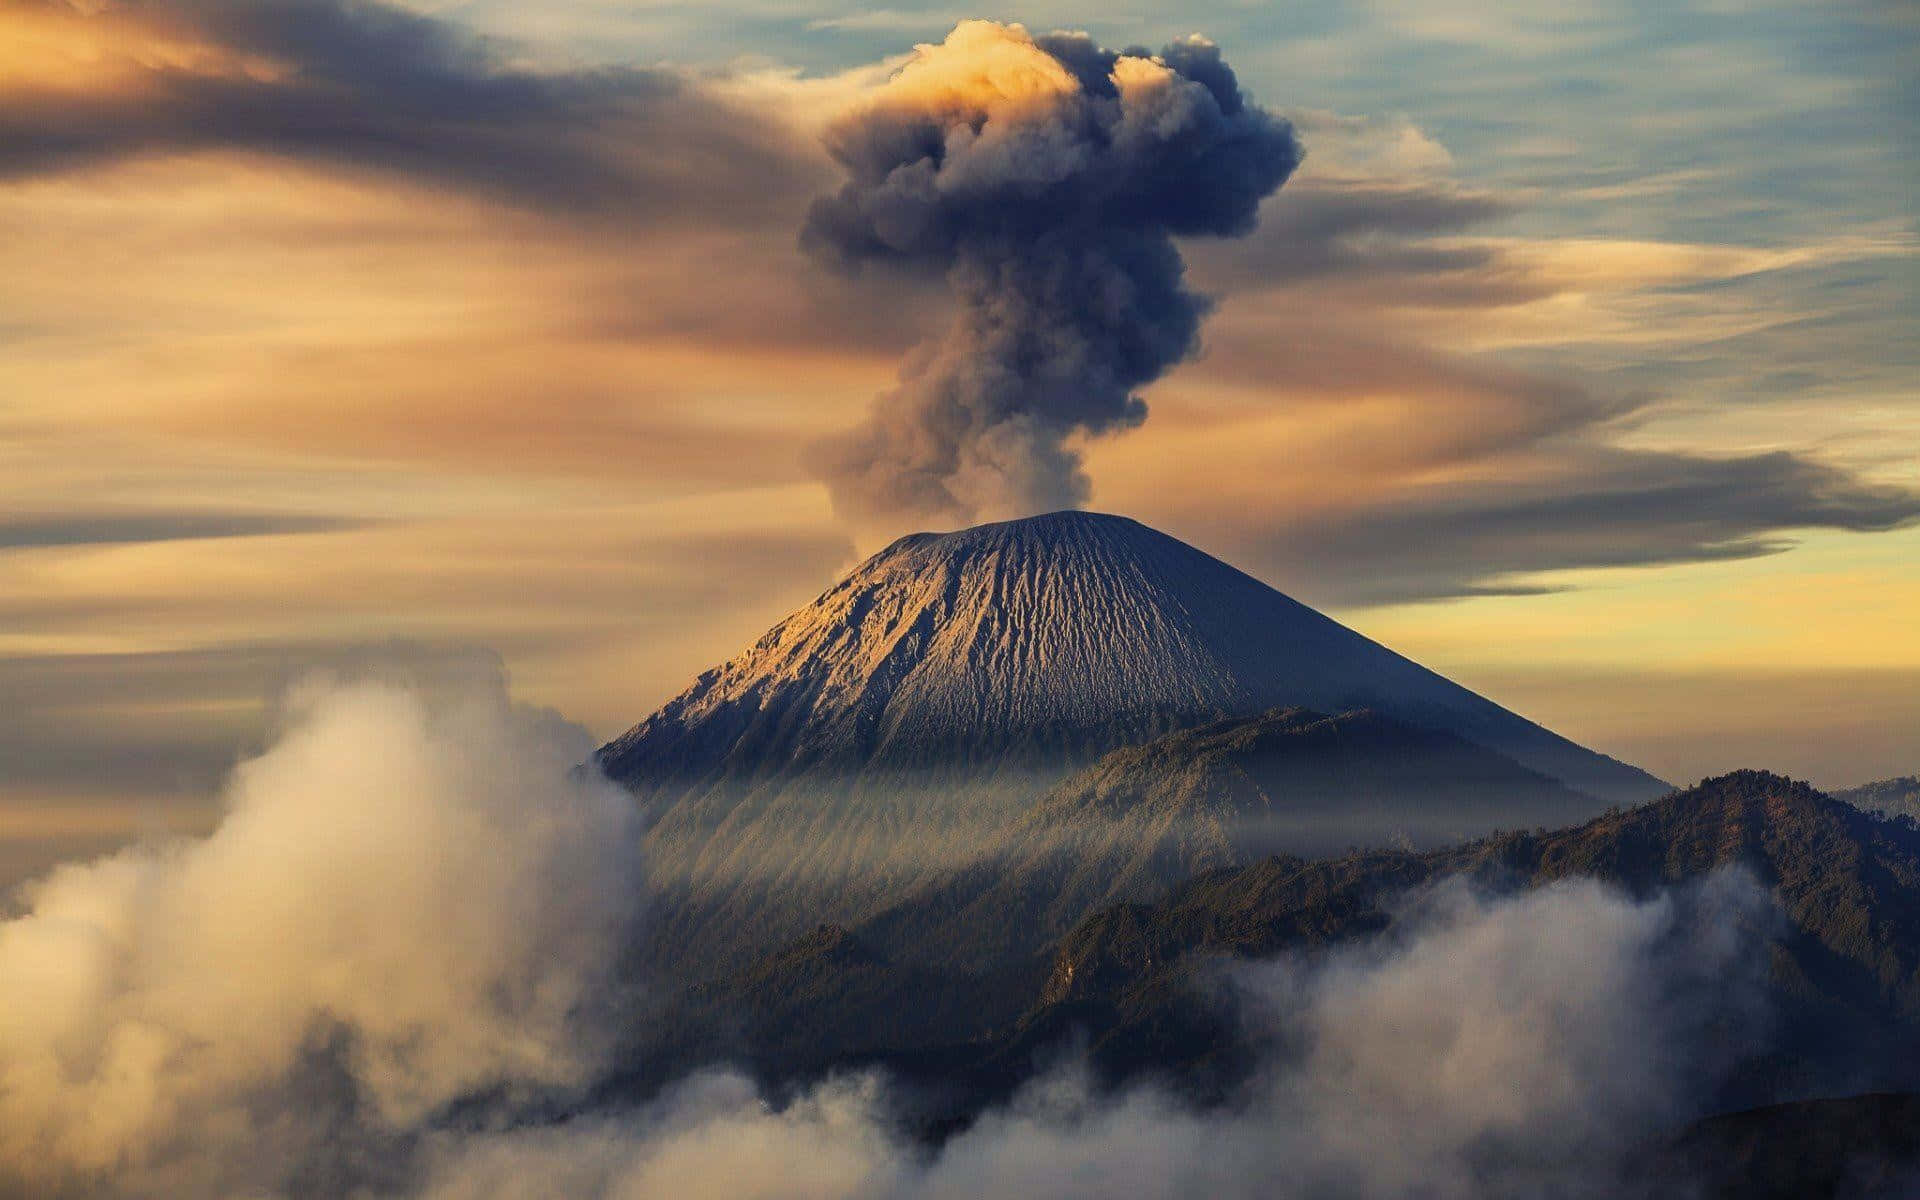 Etbilledet Fra Luften Af En Vulkan I Det Nordvestlige Stillehavsområde.